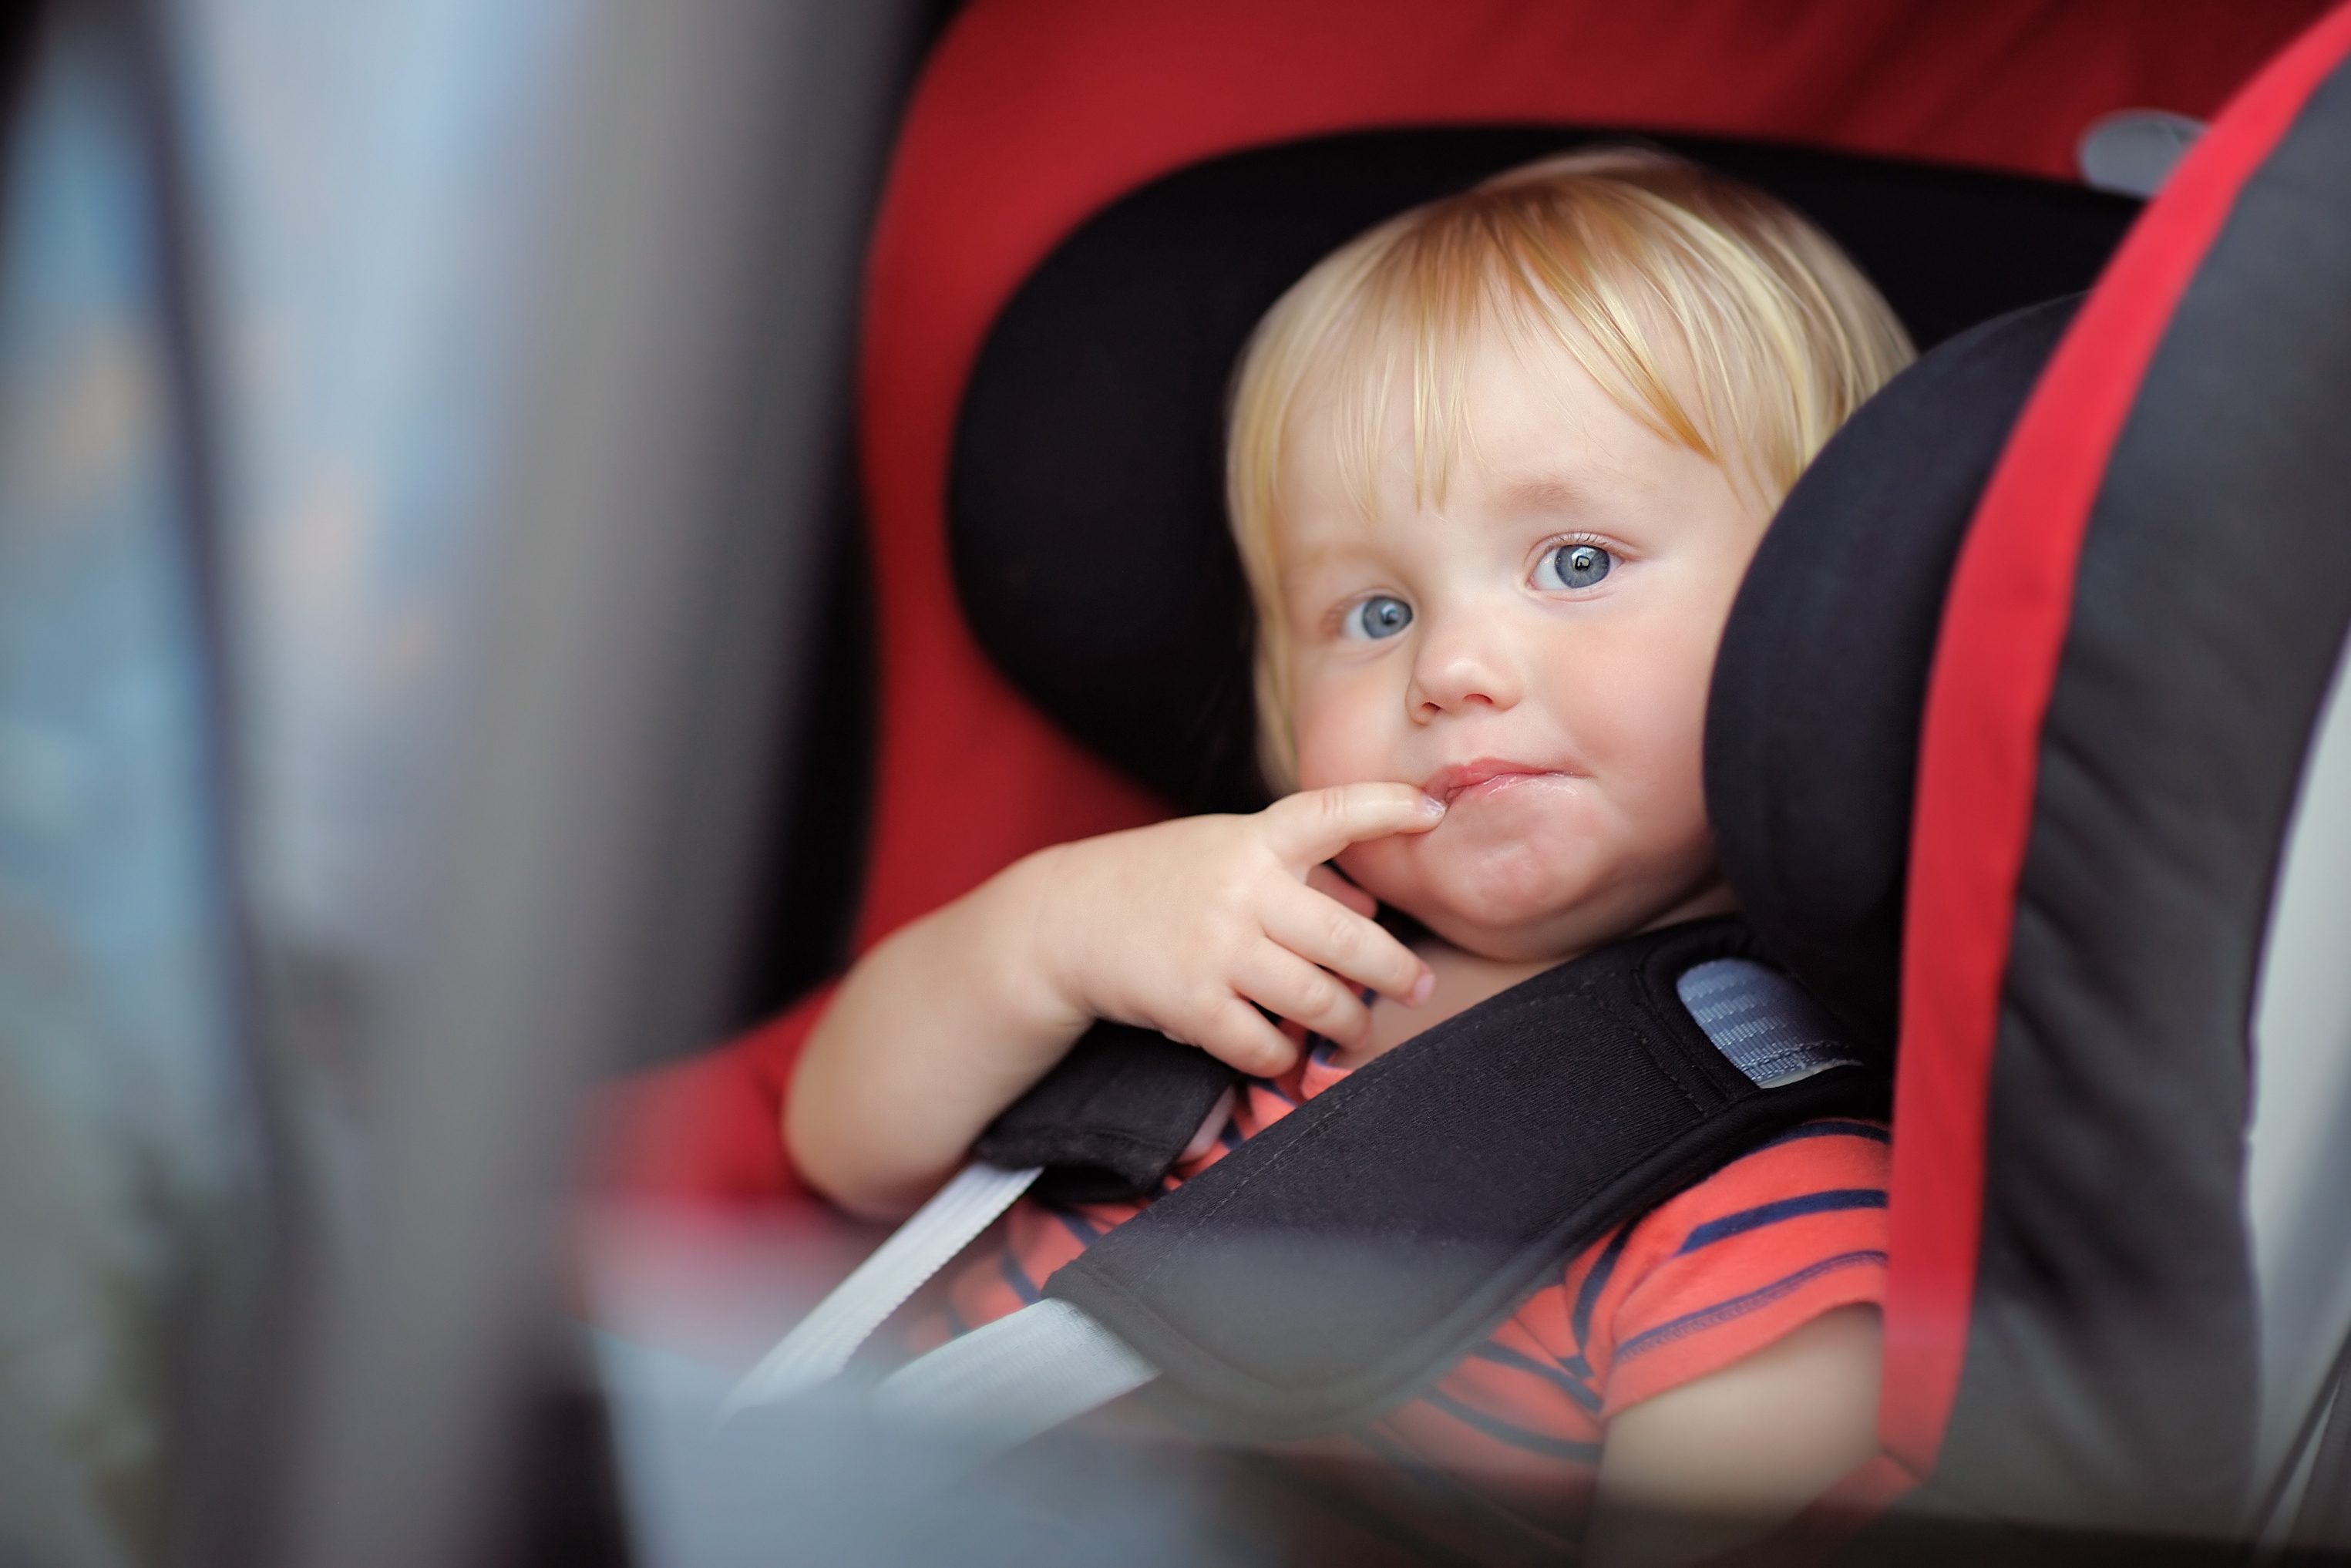 toddler in car seat